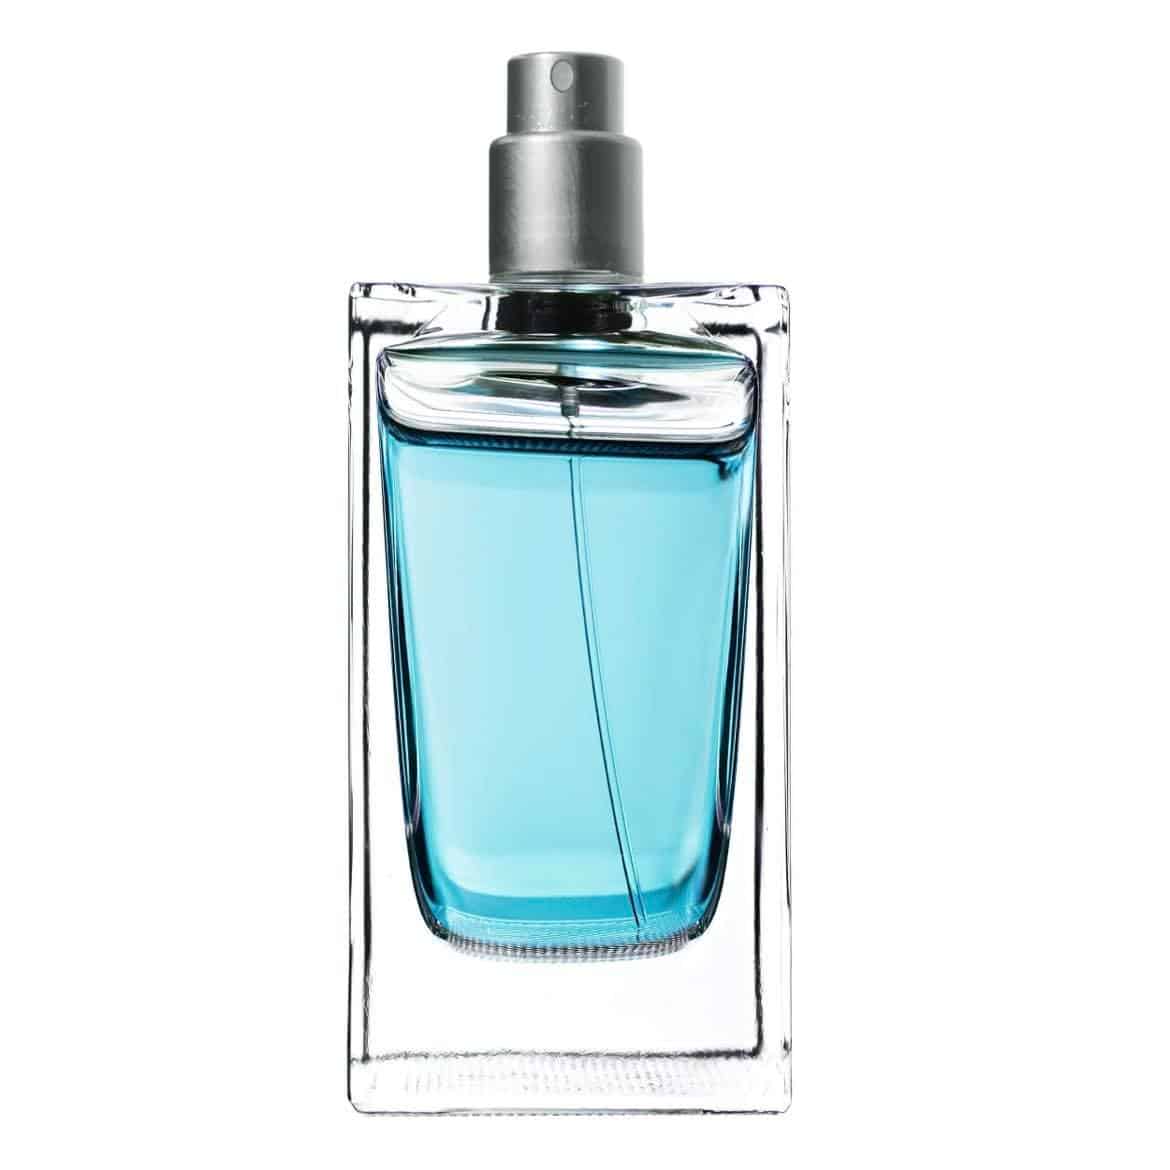 Light Blue Fragrance Oil